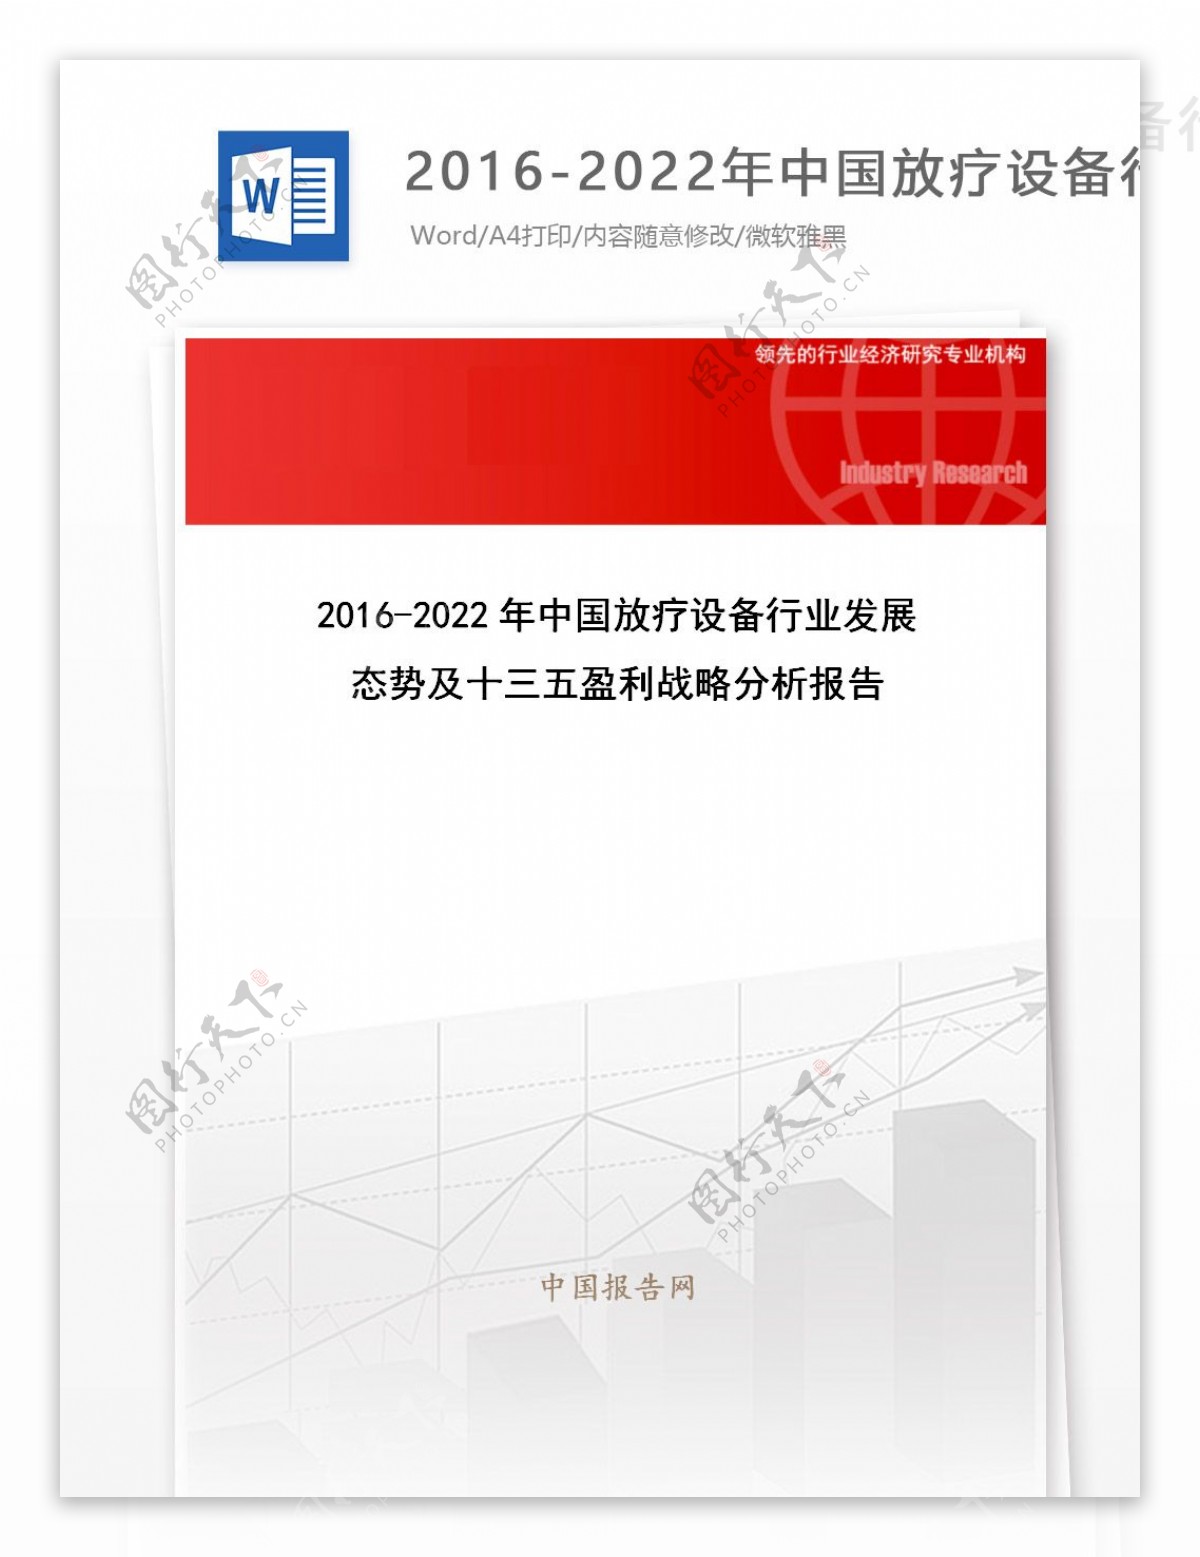 20162022年中国放疗设备行业发展态势及十三五盈利战略分析报告目录